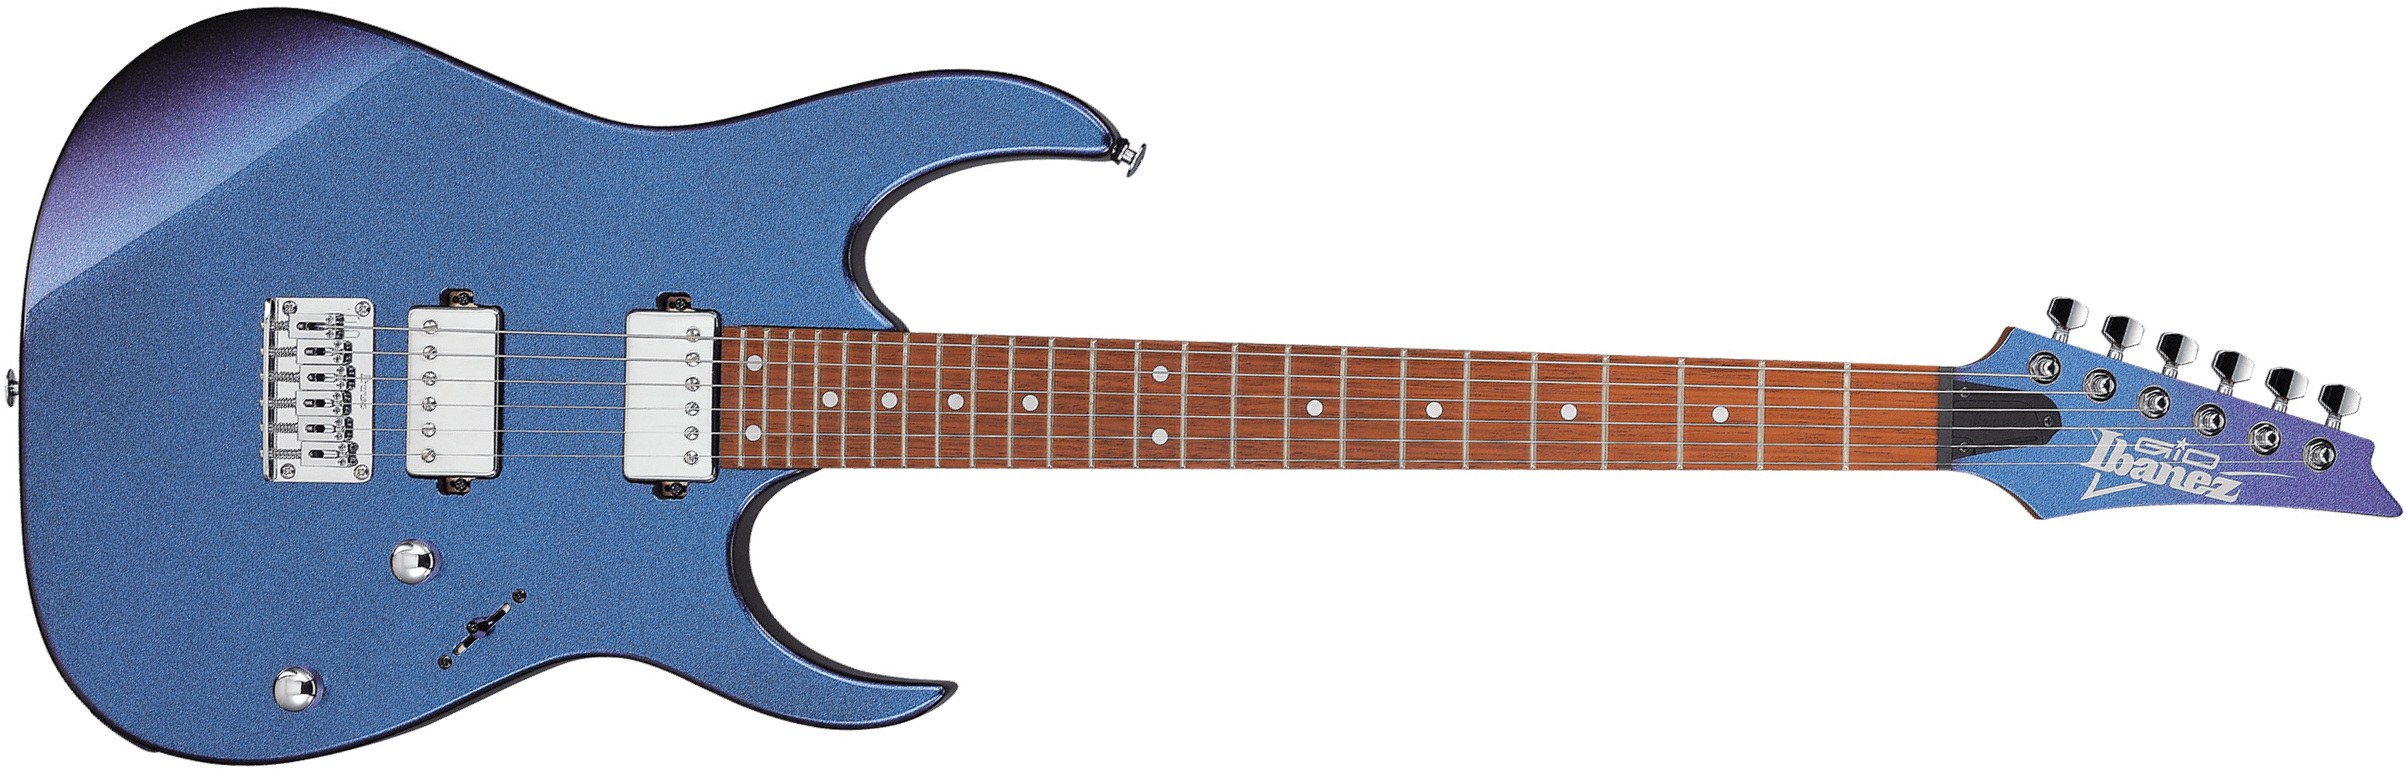 Ibanez Grg121sp Bmc Ltd Gio Hh Ht Jat - Blue Metal Cameleon - Guitare Électrique Forme Str - Main picture